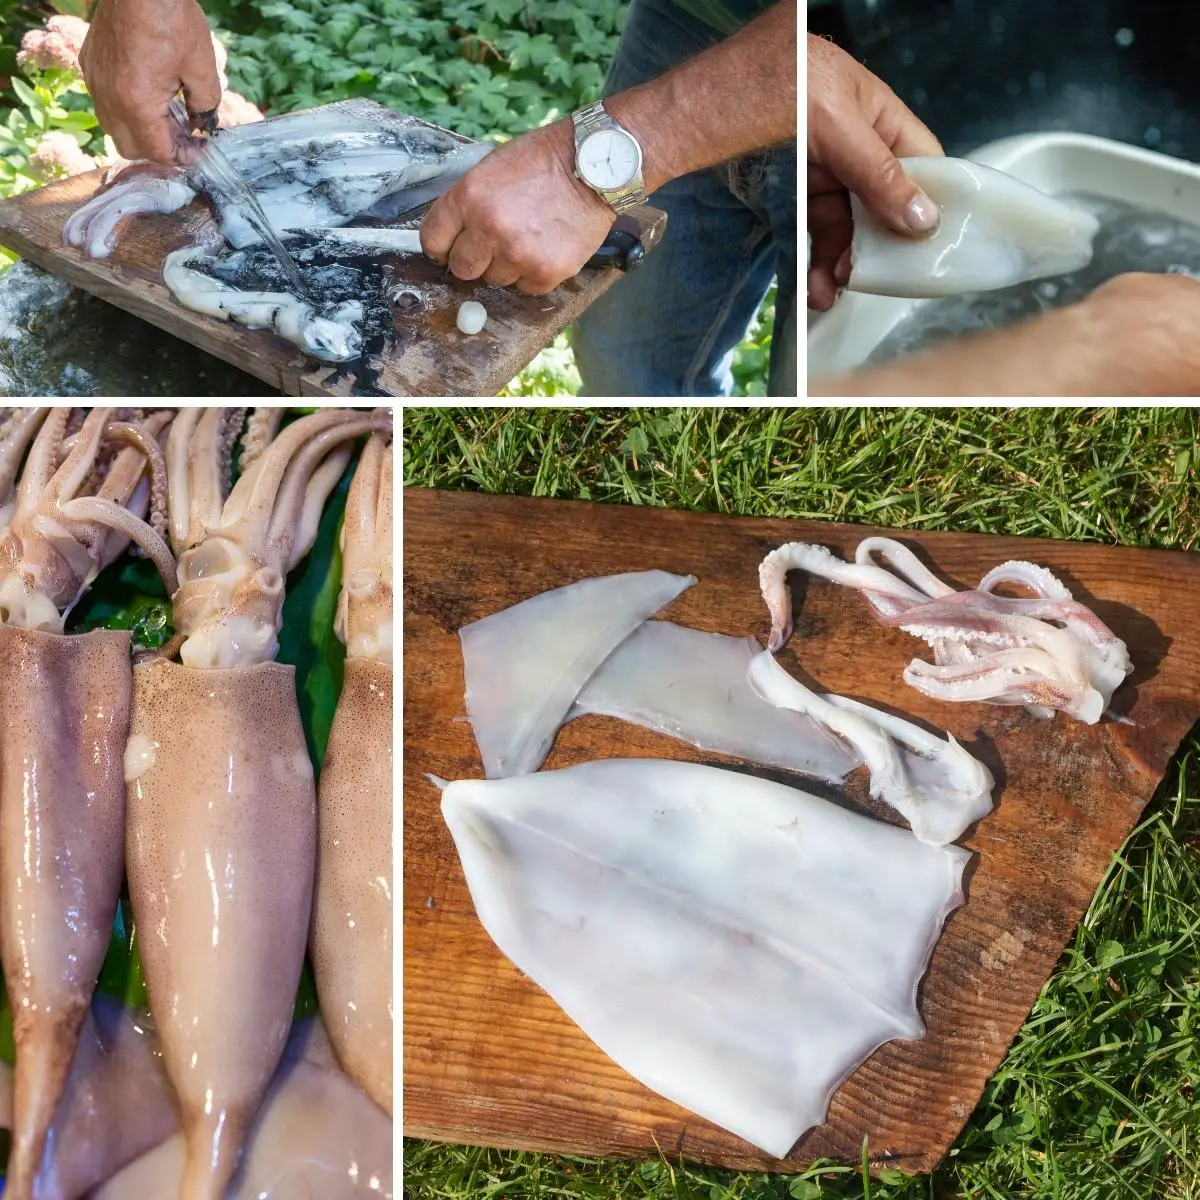 How to clean squids, calamari.